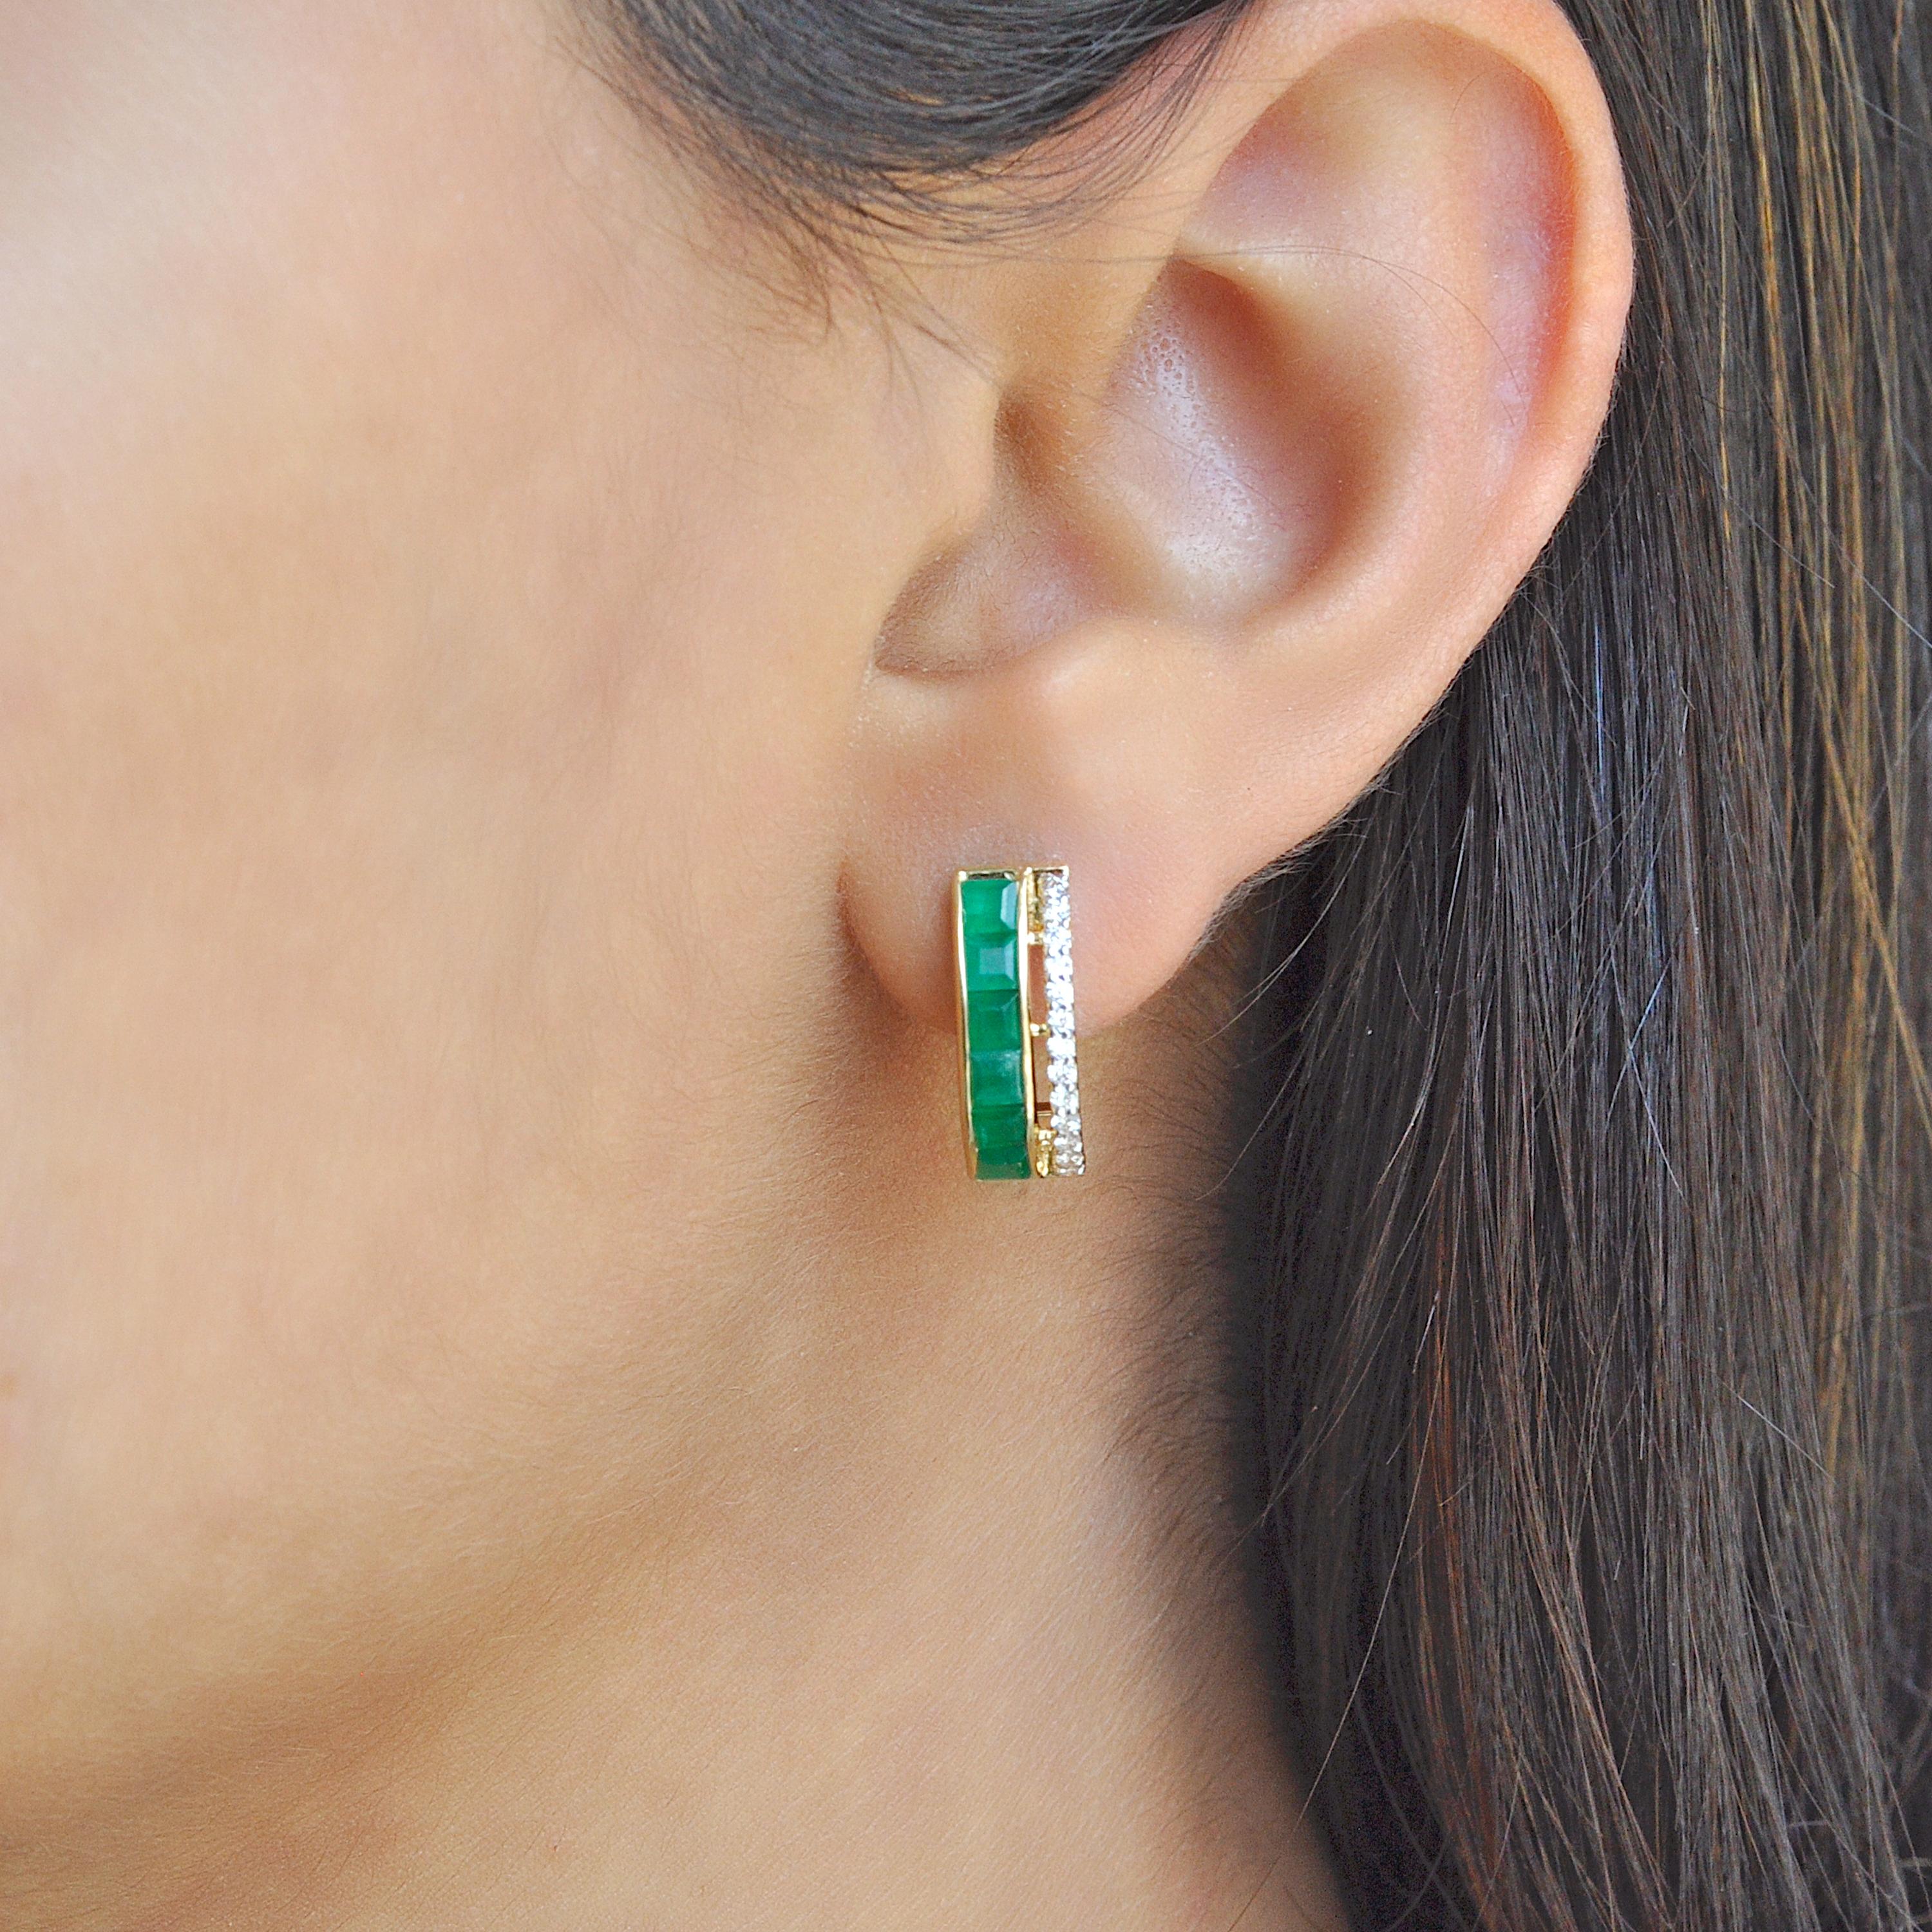 18 Karat Gelbgold 3mm quadratisch Kanal gesetzt brasilianischen Smaragd Diamant Reif Ohrringe.

Tauchen Sie ein in die Welt der Opulenz mit unseren 3 mm großen, mit Diamanten besetzten Ohrringen aus 18-karätigem Gold, die von zeitloser Eleganz und